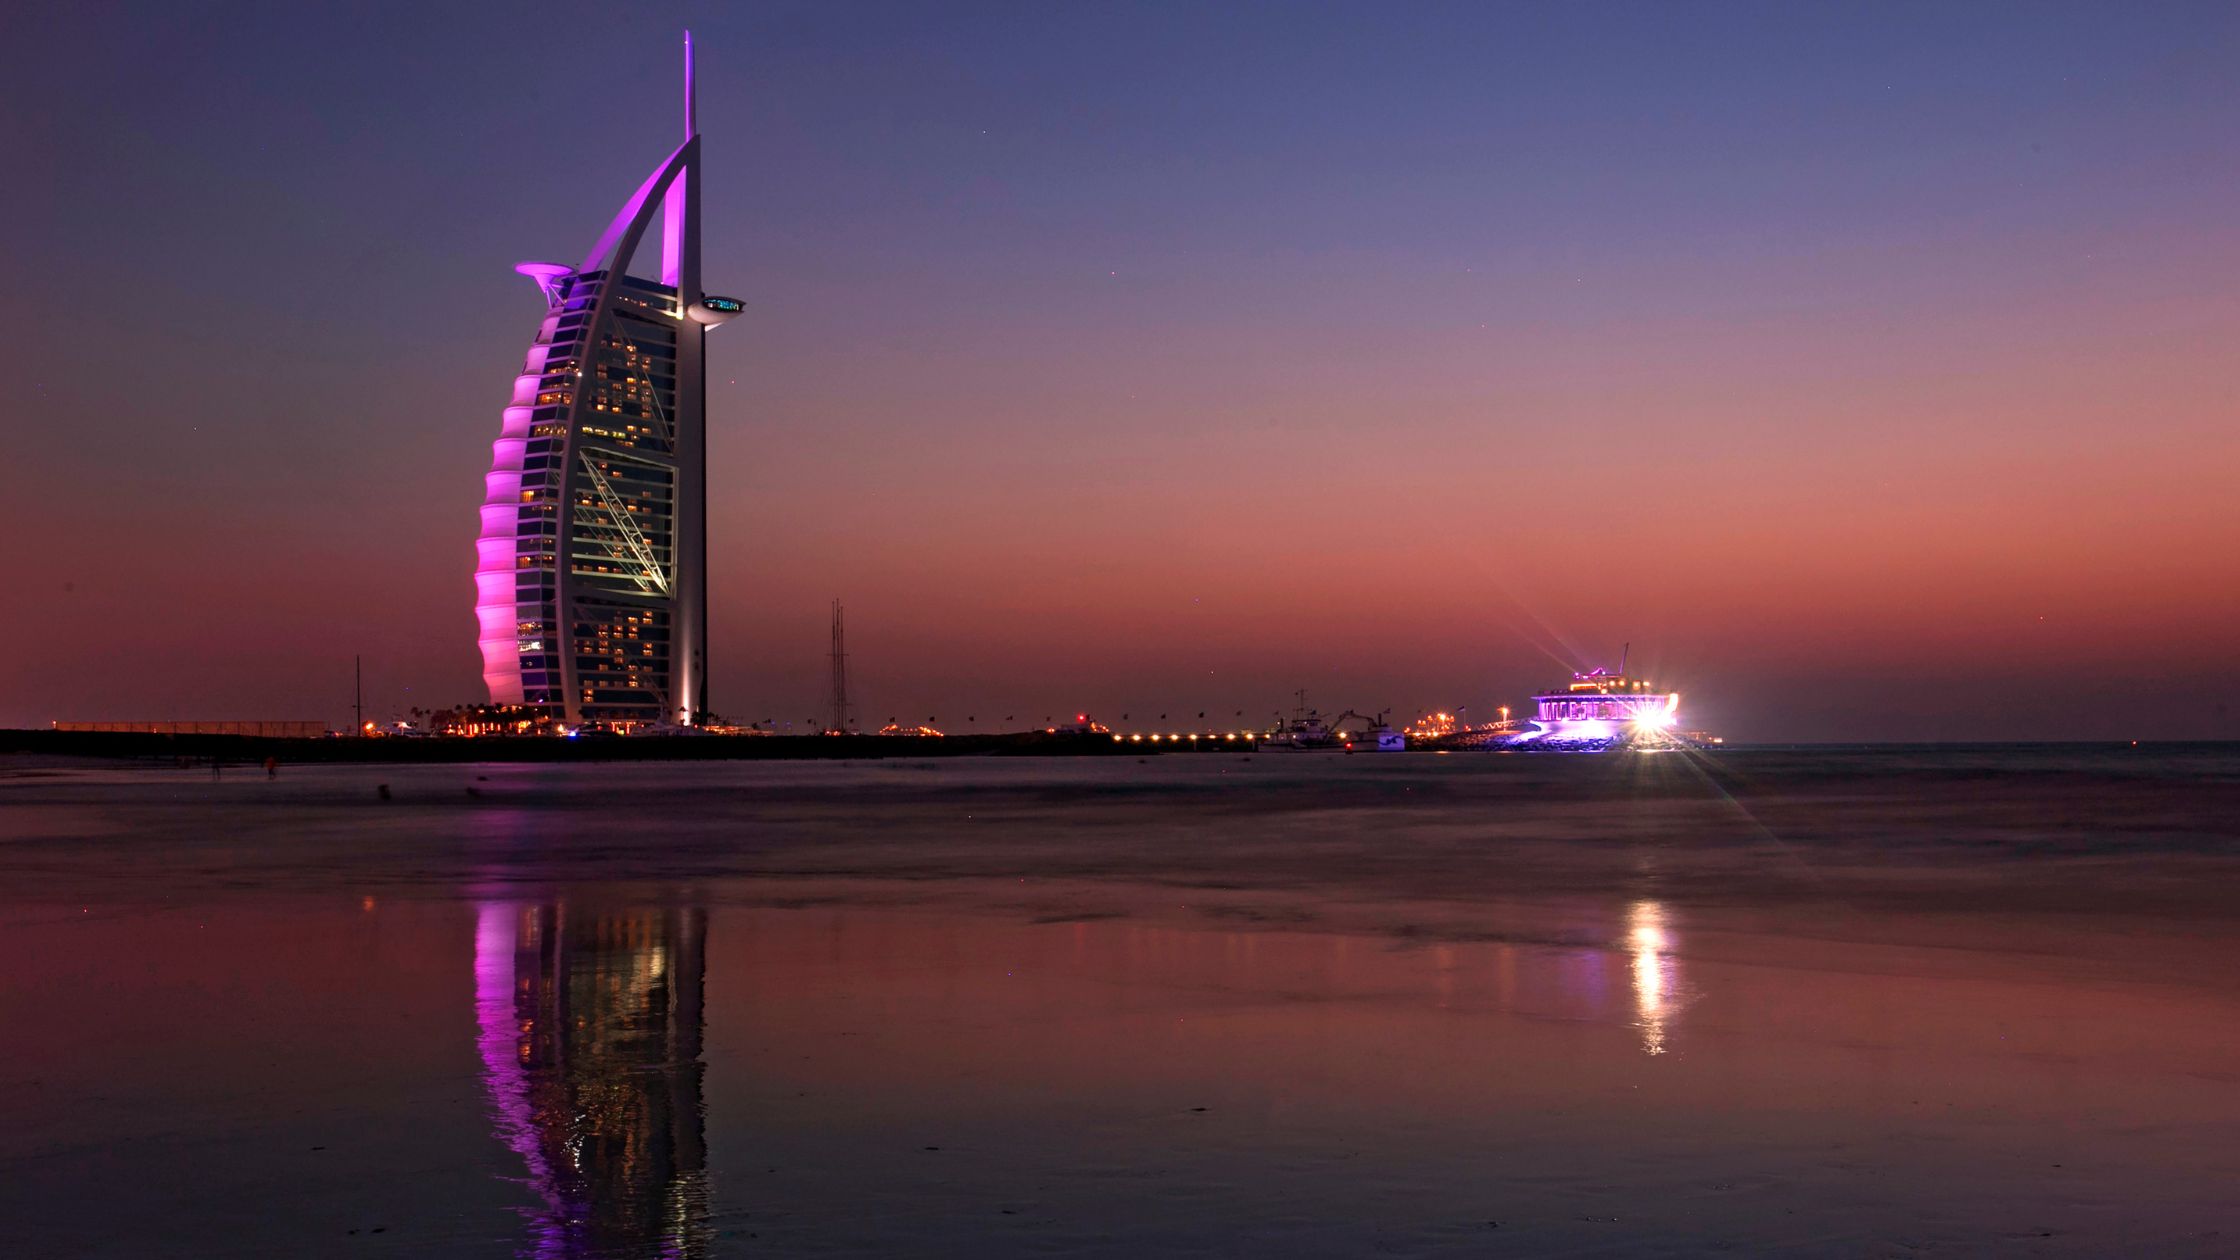 Night swimming in Dubai: You Can Night Swim At 3 Beaches